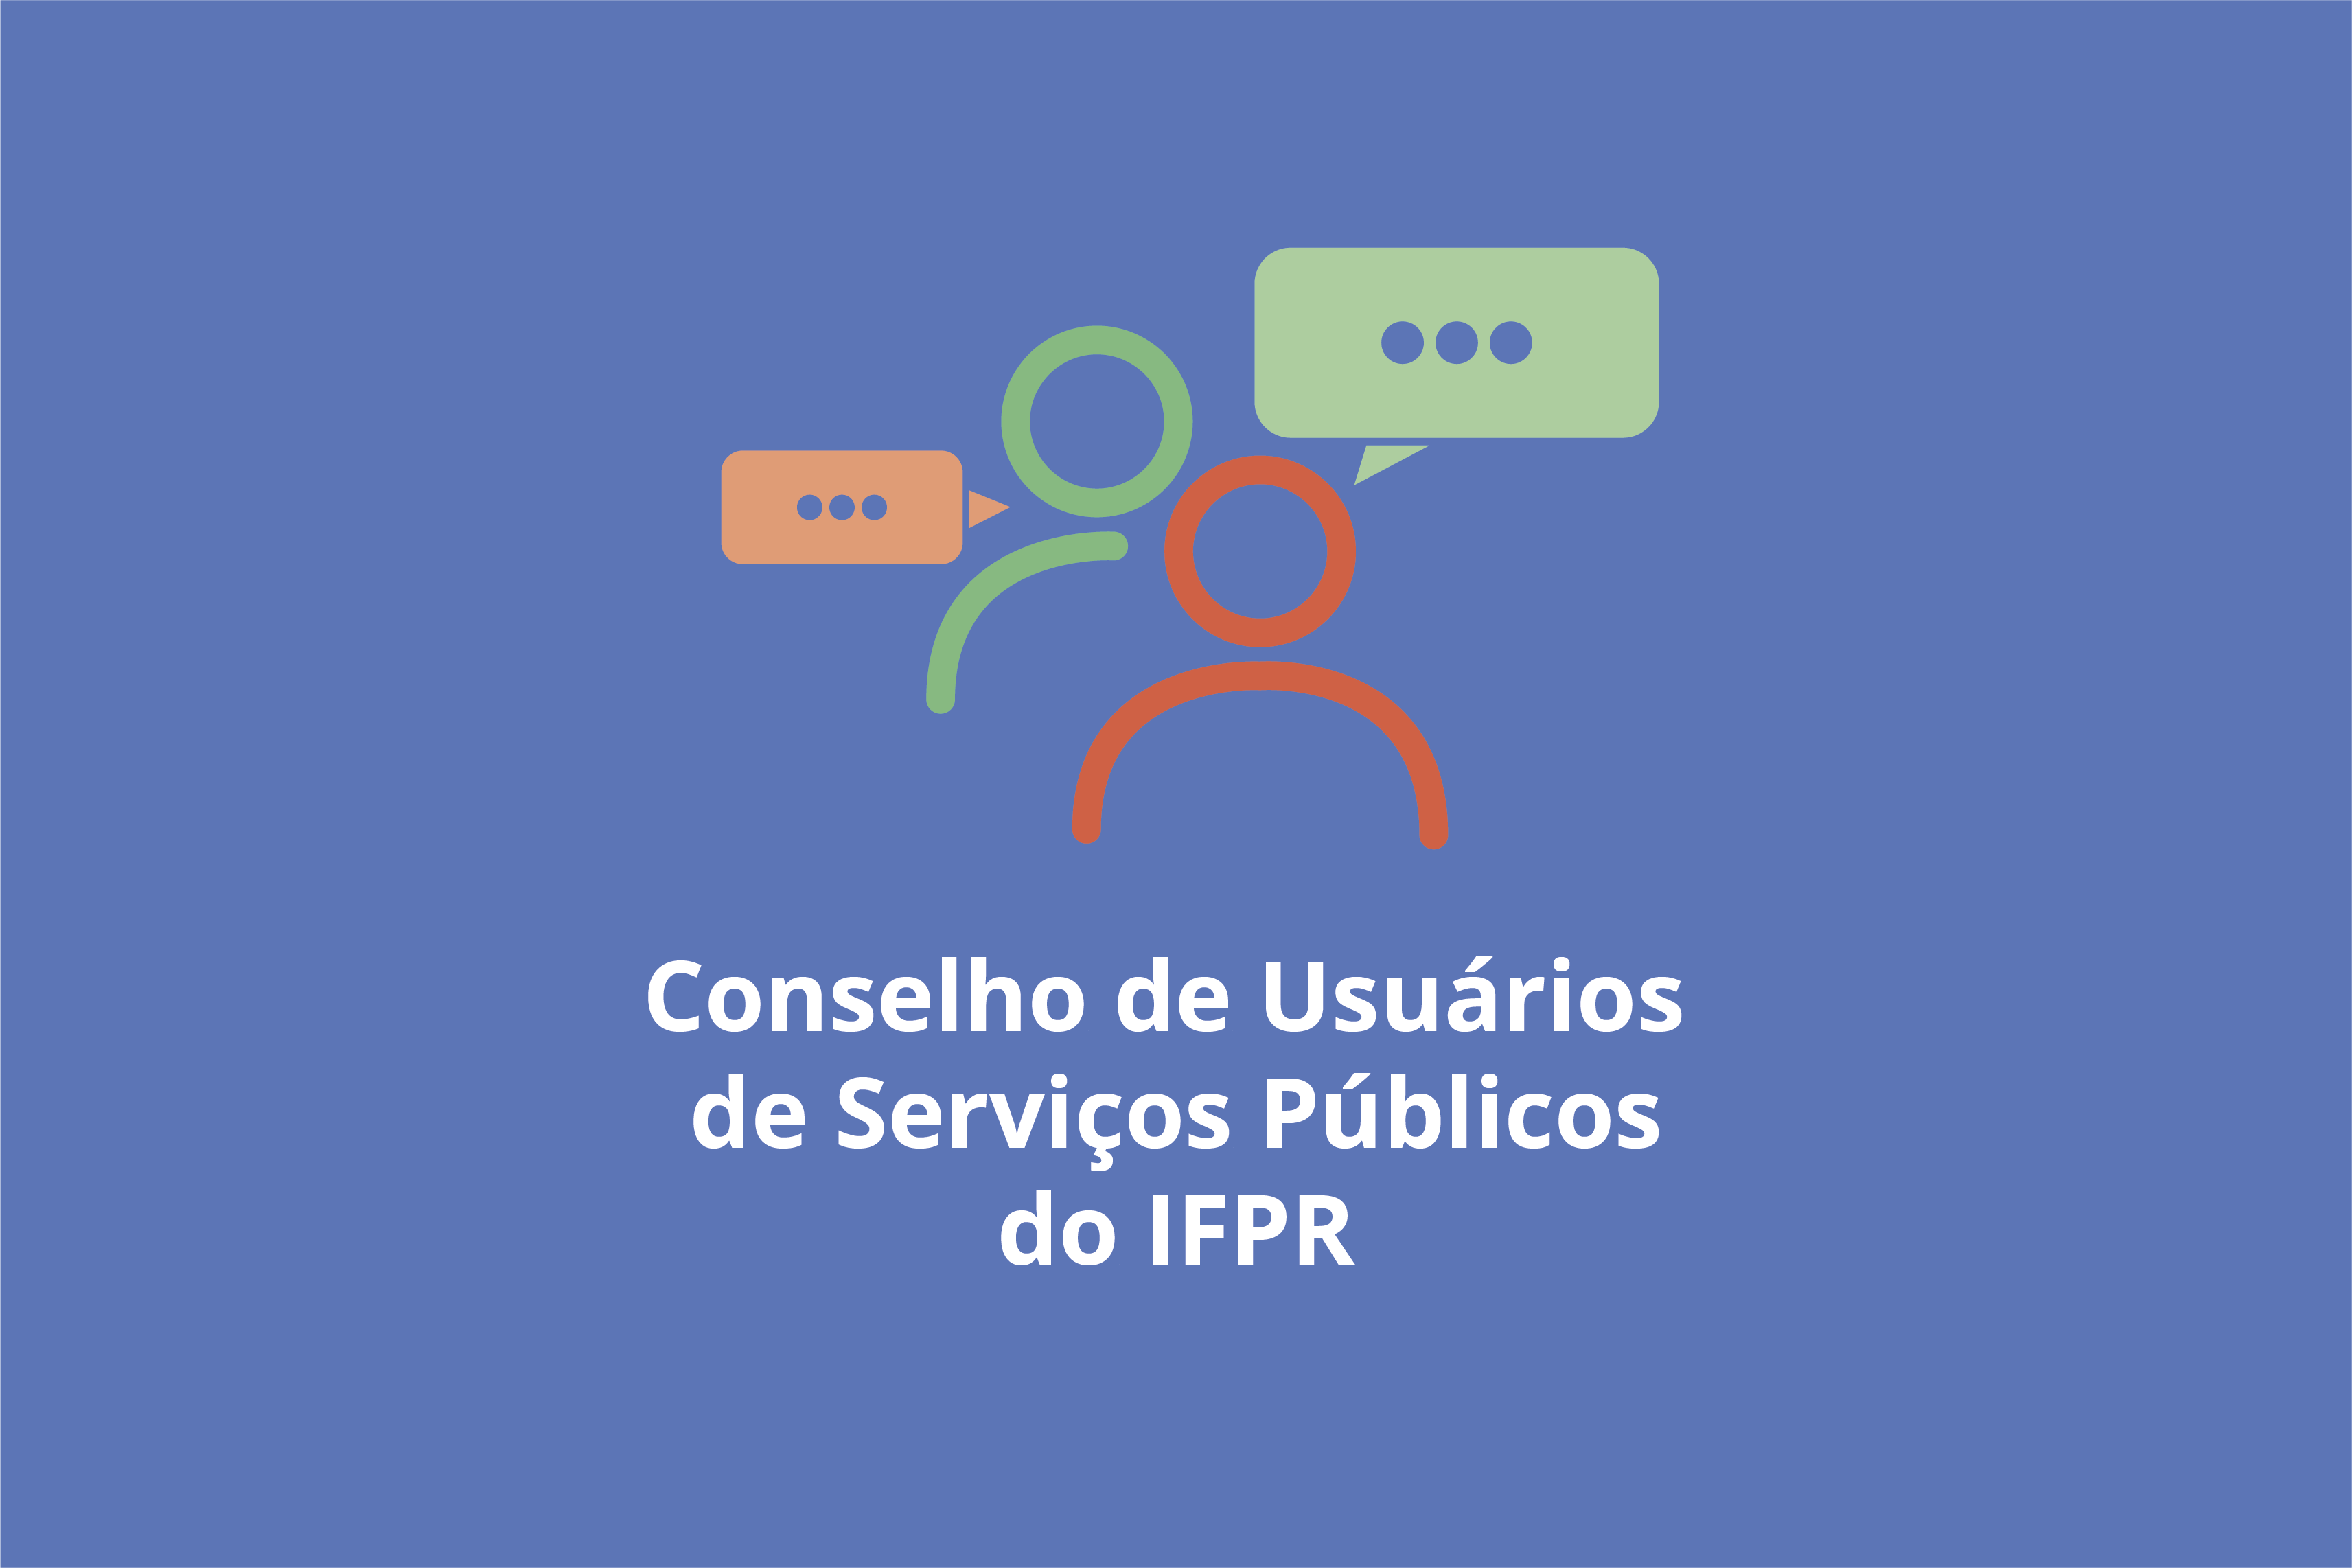 "Conselho de Usuários de Serviços Públicos do IFPR"